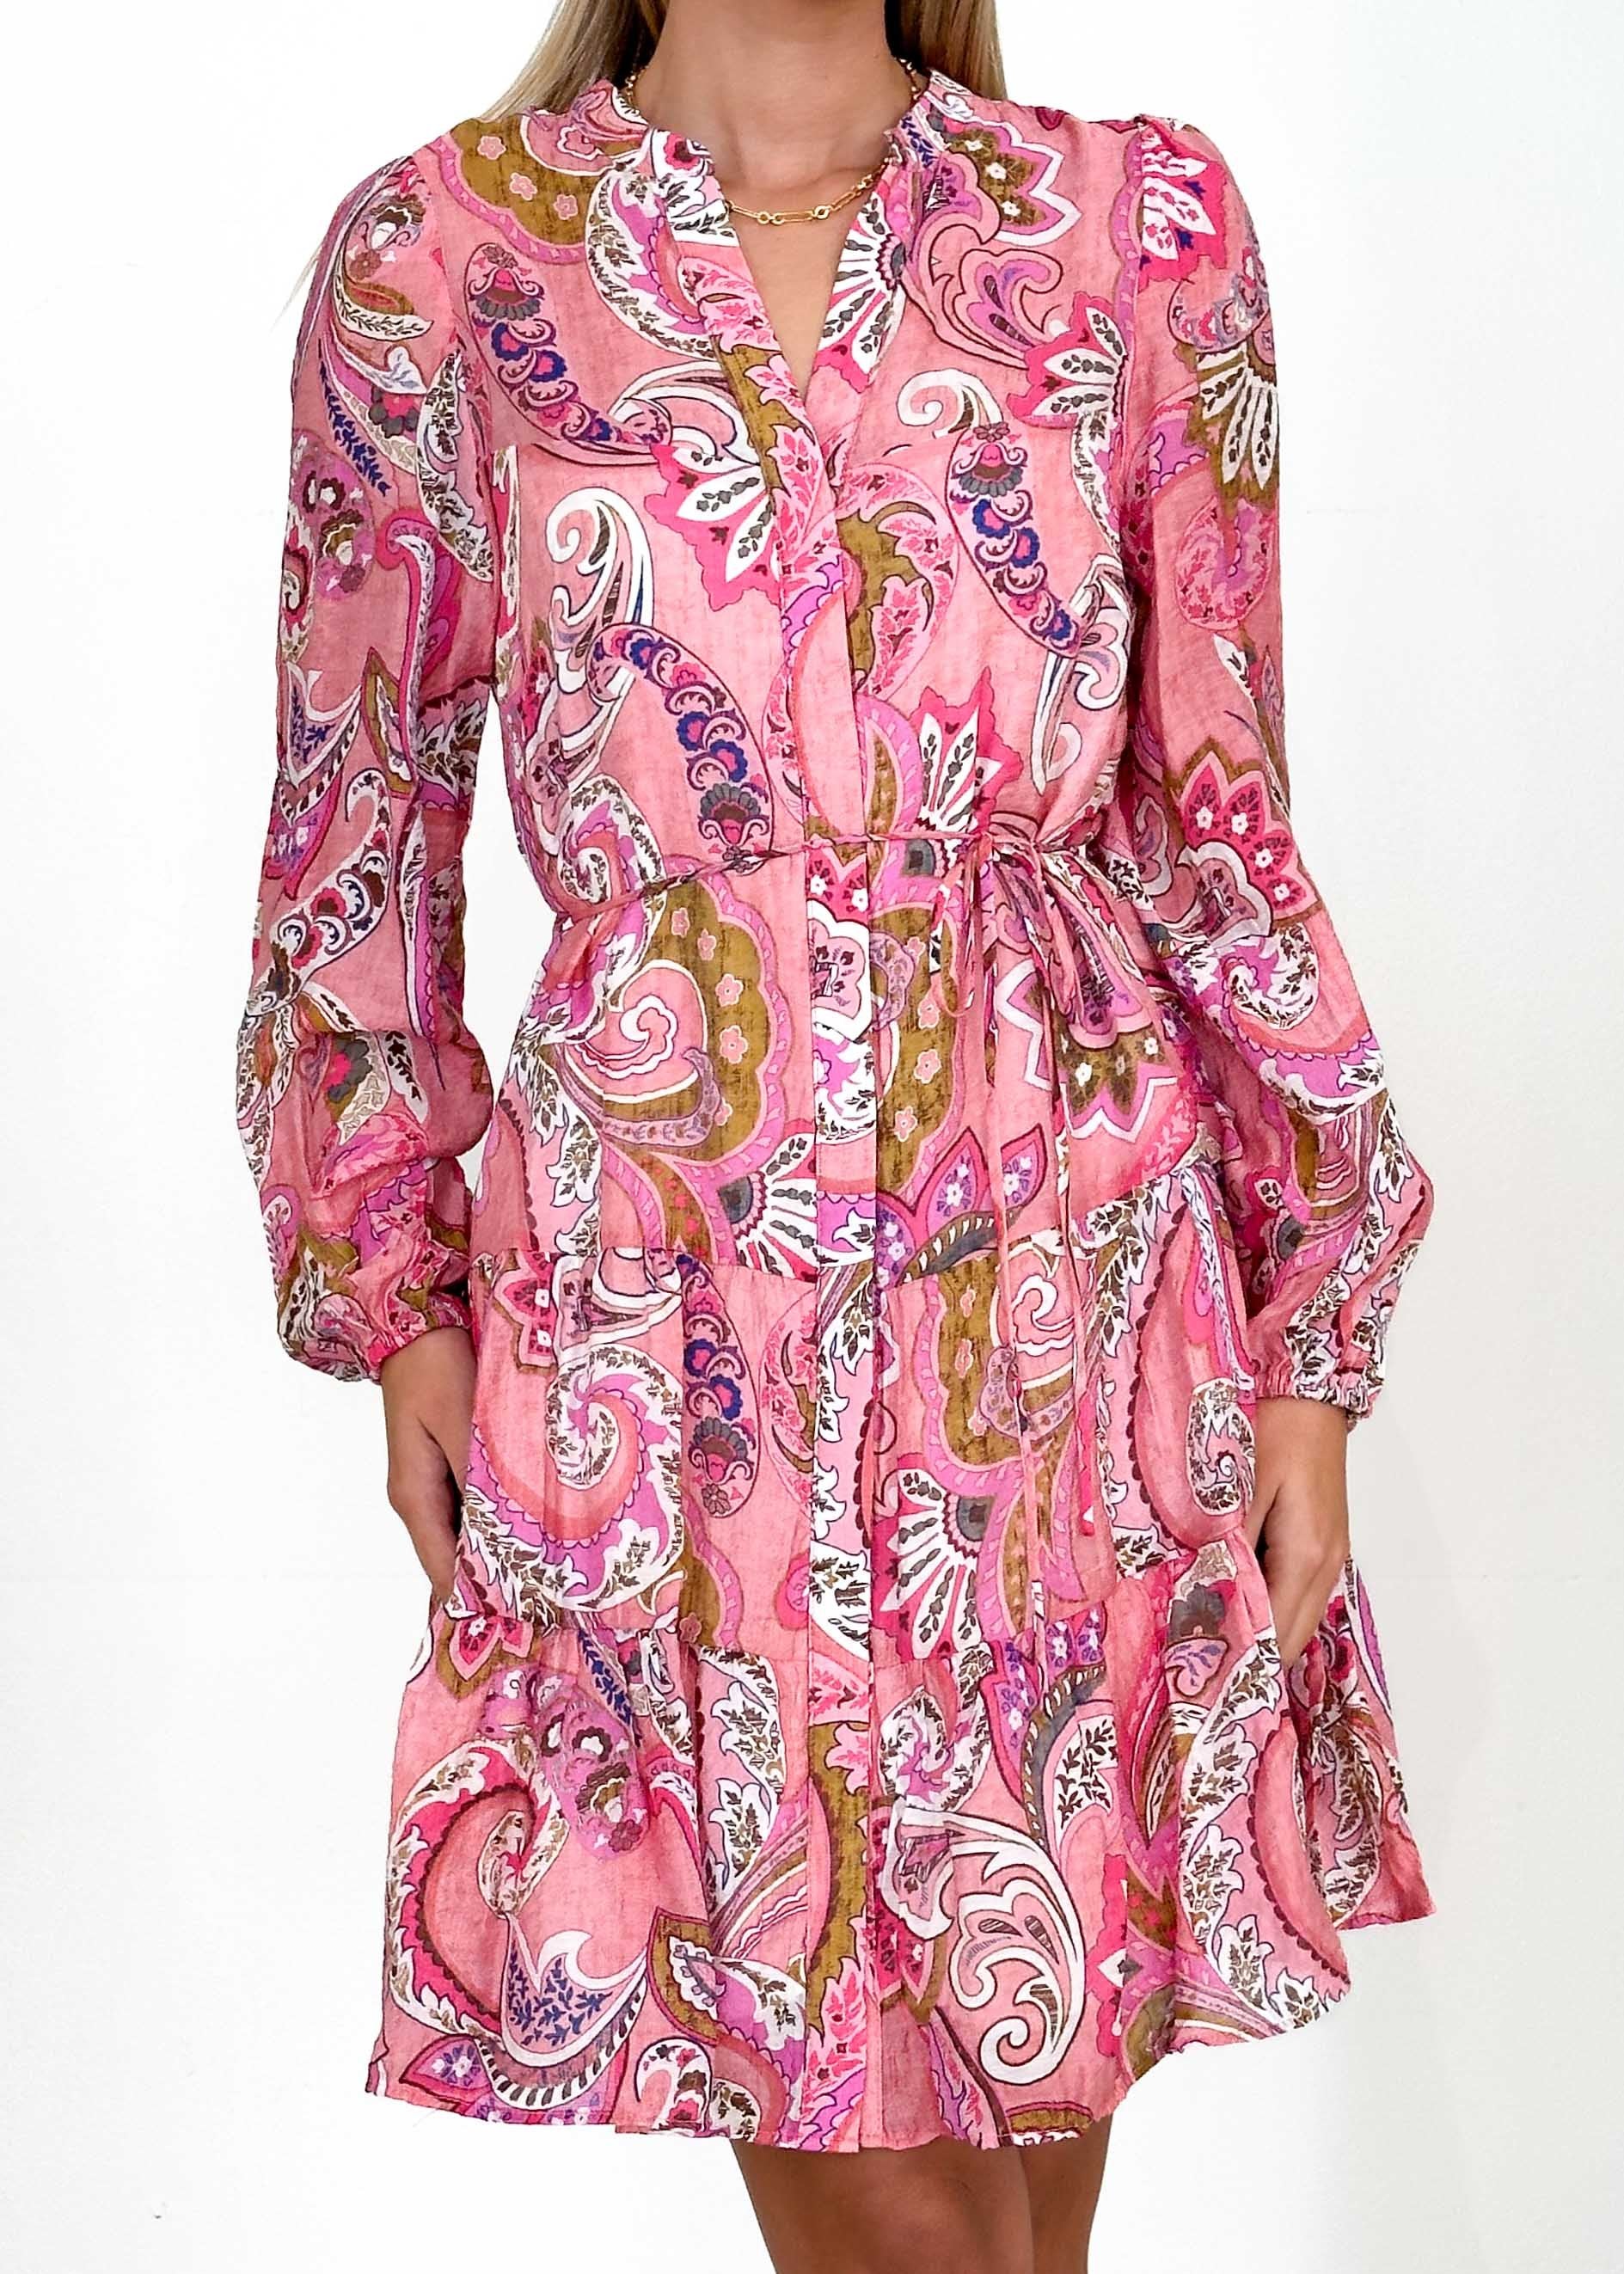 Awsonna Dress - Pink Paisley